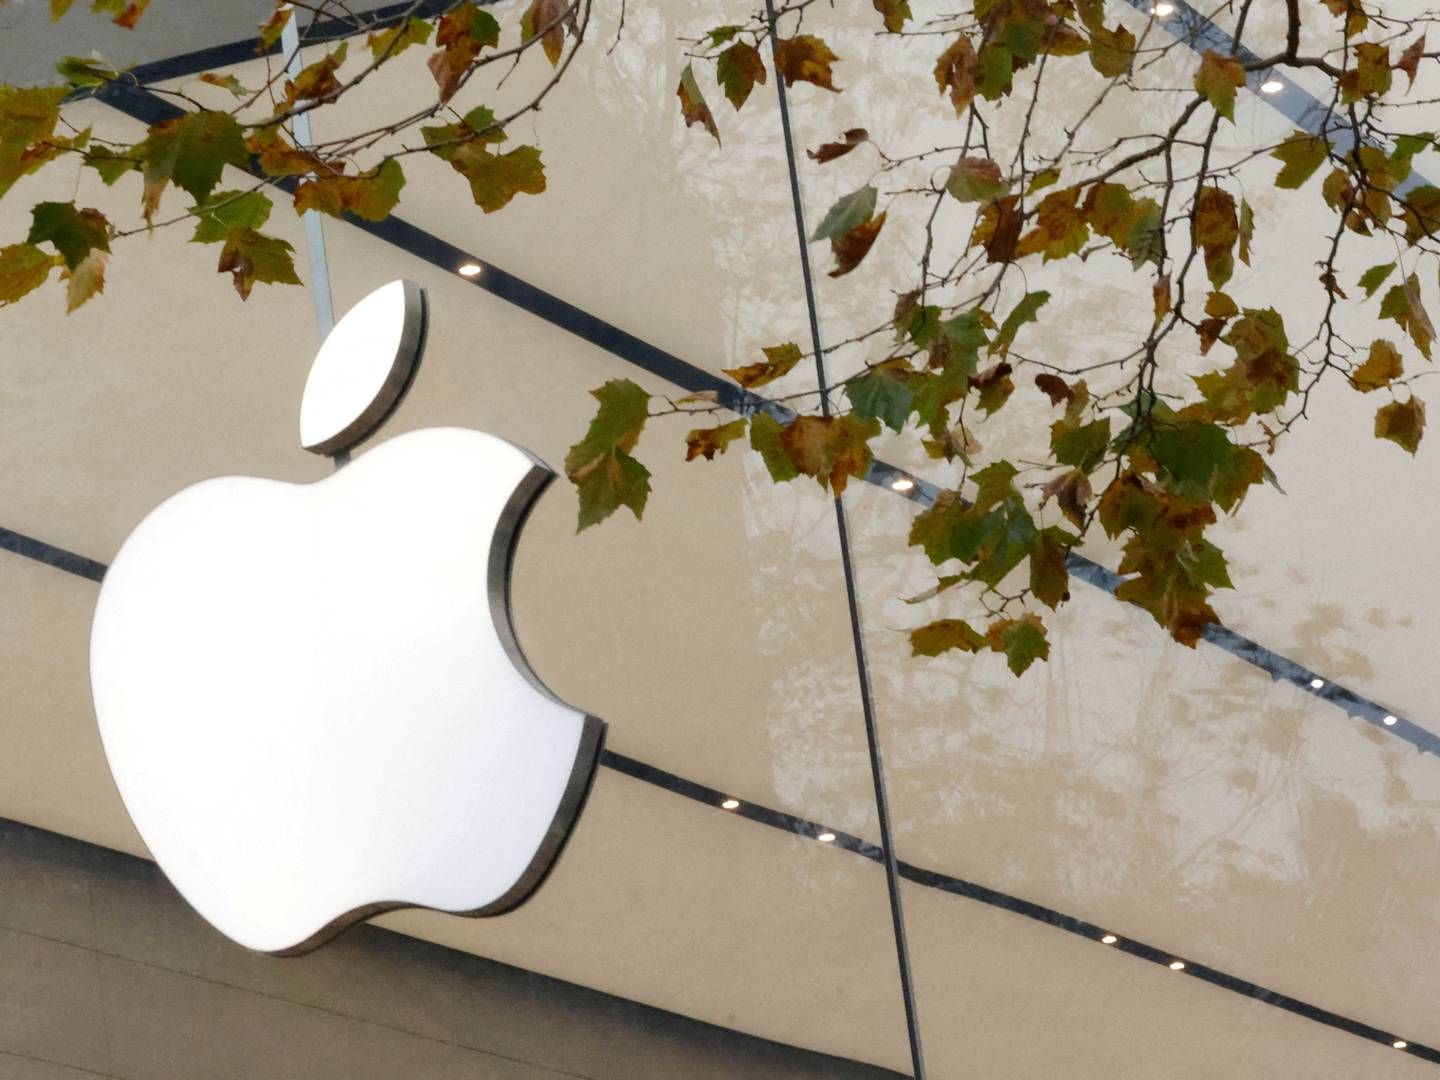 Underholdningschef Pete Distad vil forlade Apple-koncernen i løbet af maj måned. | Foto: Yves Herman/Reuters/Ritzau Scanpix